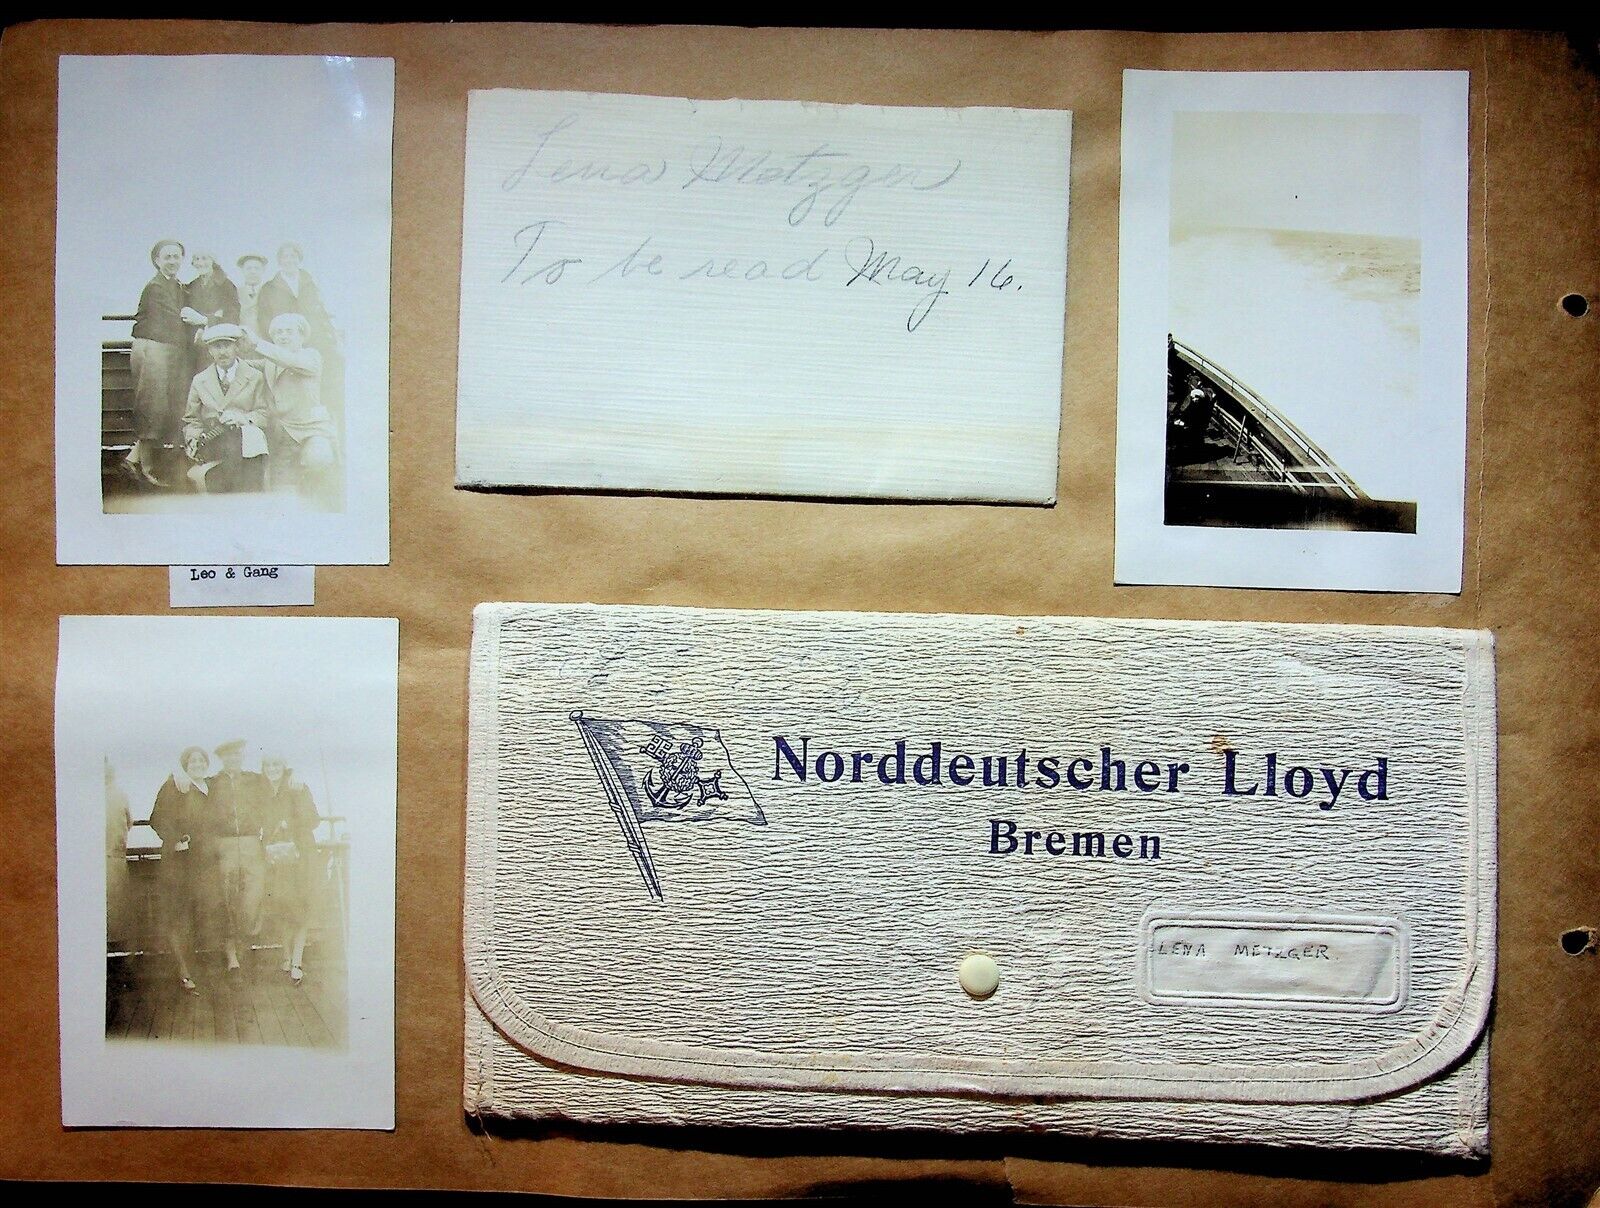 1930 Norddeutscher Lloyd Bremen Souvenirs Photos Canvas Document Holder Dog Hat